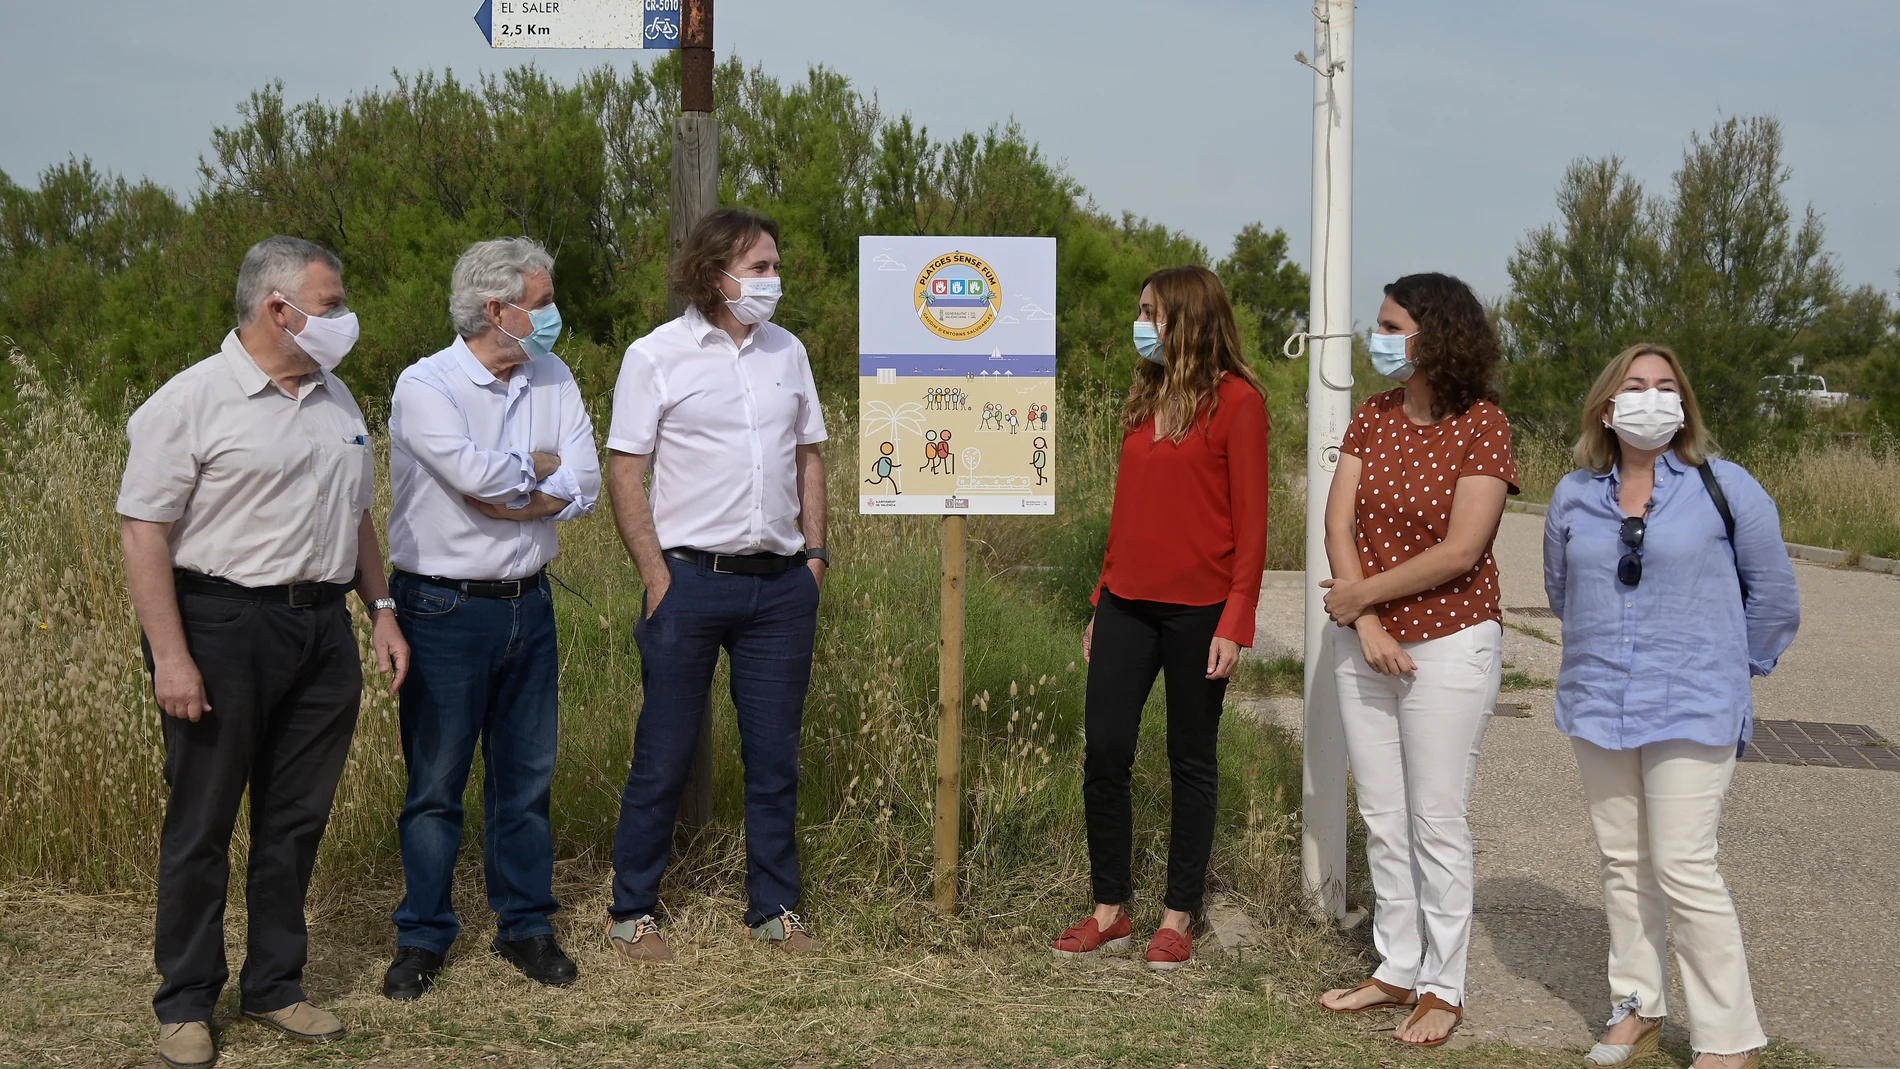 El concejal de Playas, Giuseppe Grezzi, y el de Salud y Consumo, Emiliano García, han presentado la campanya "Platges sense fum" junto a la secretaria autonómica de Salud Públlca, Isaura Navarro.